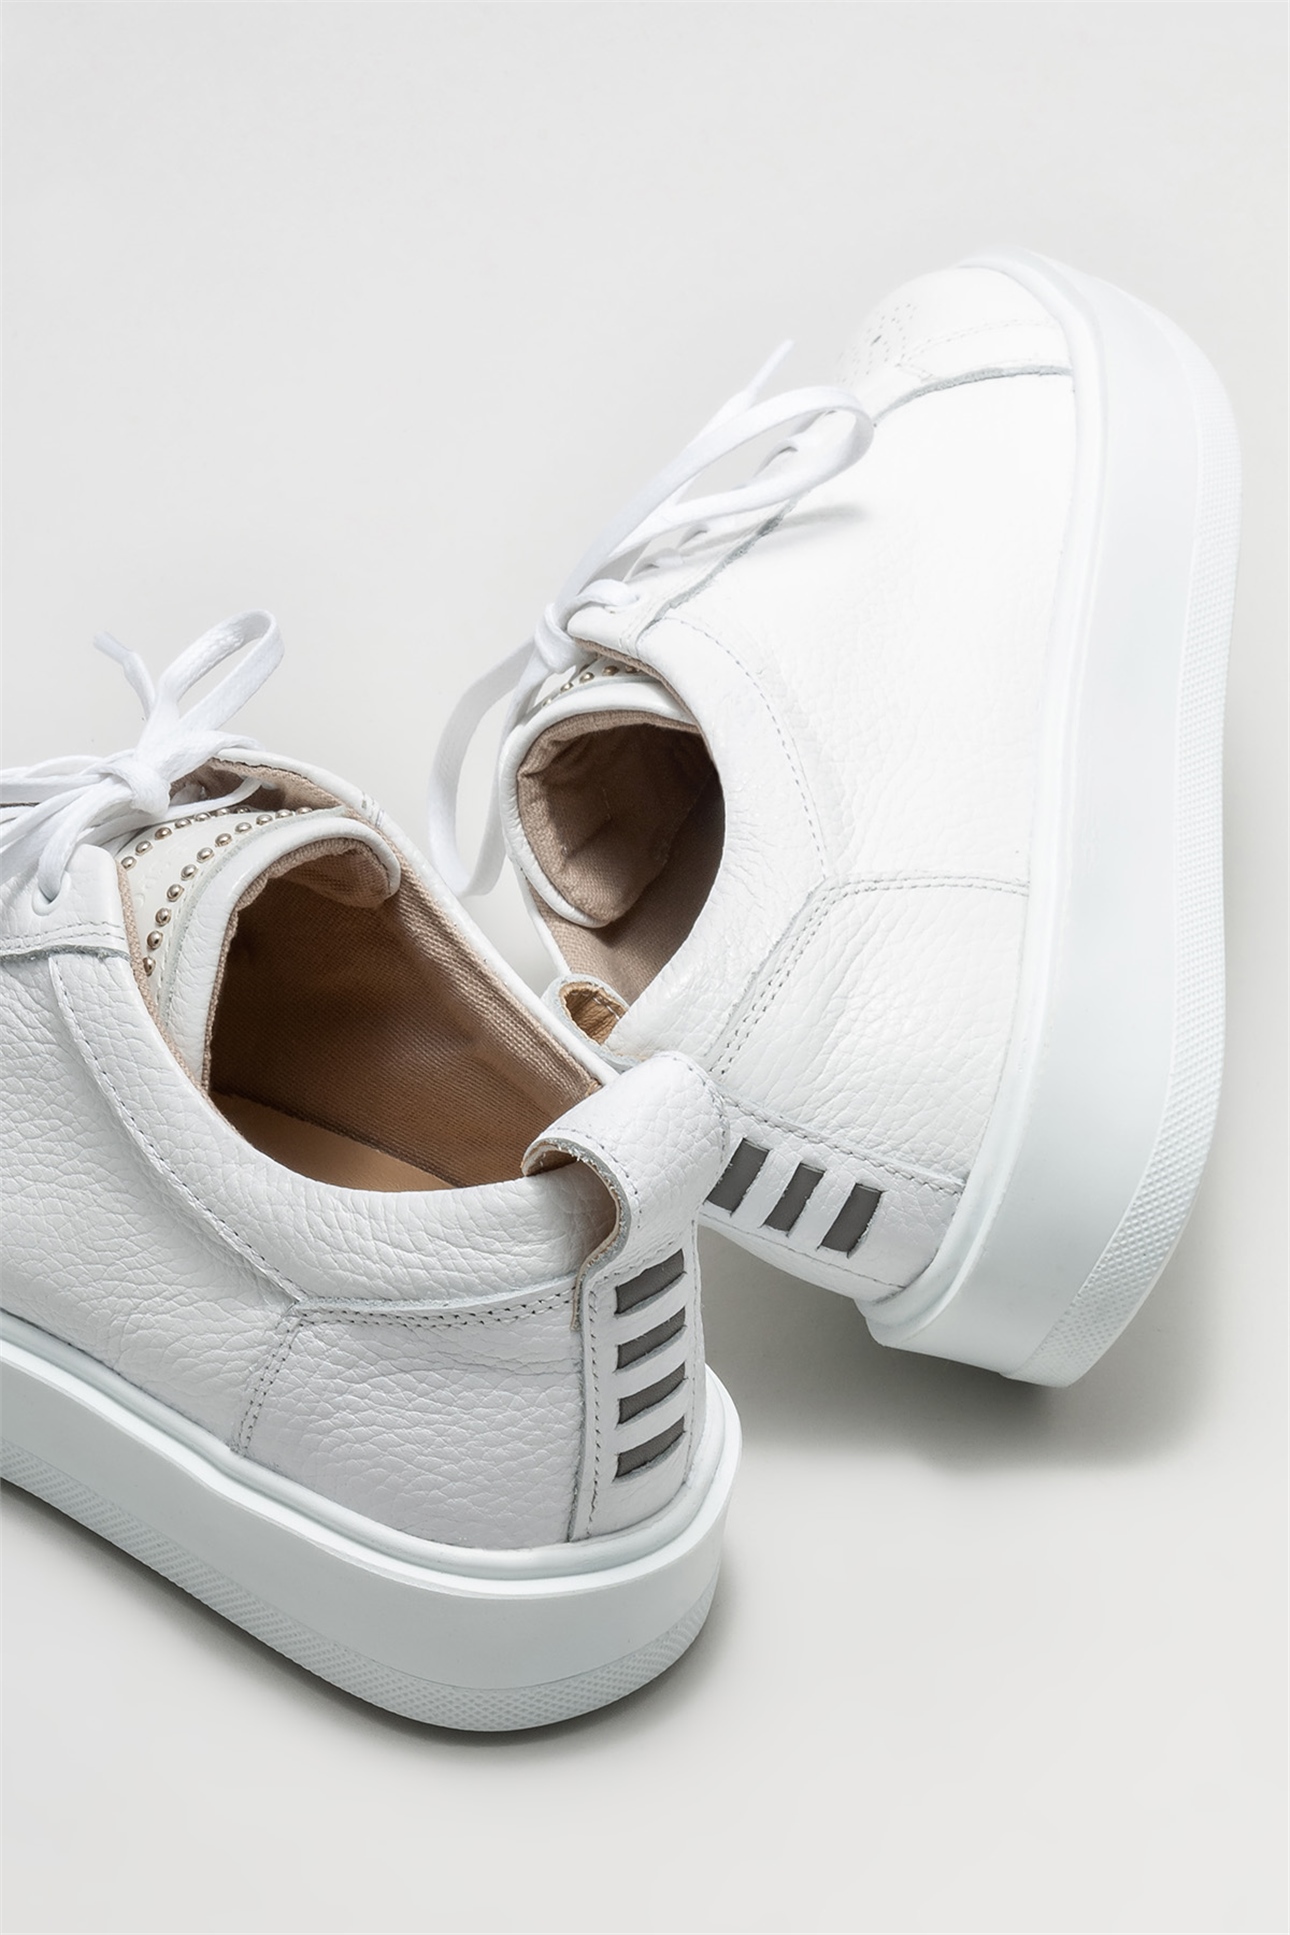 Beyaz Deri Erkek Spor Ayakkabı Satın Al! PAYSON-2-02 Fiyatı | Elle Shoes